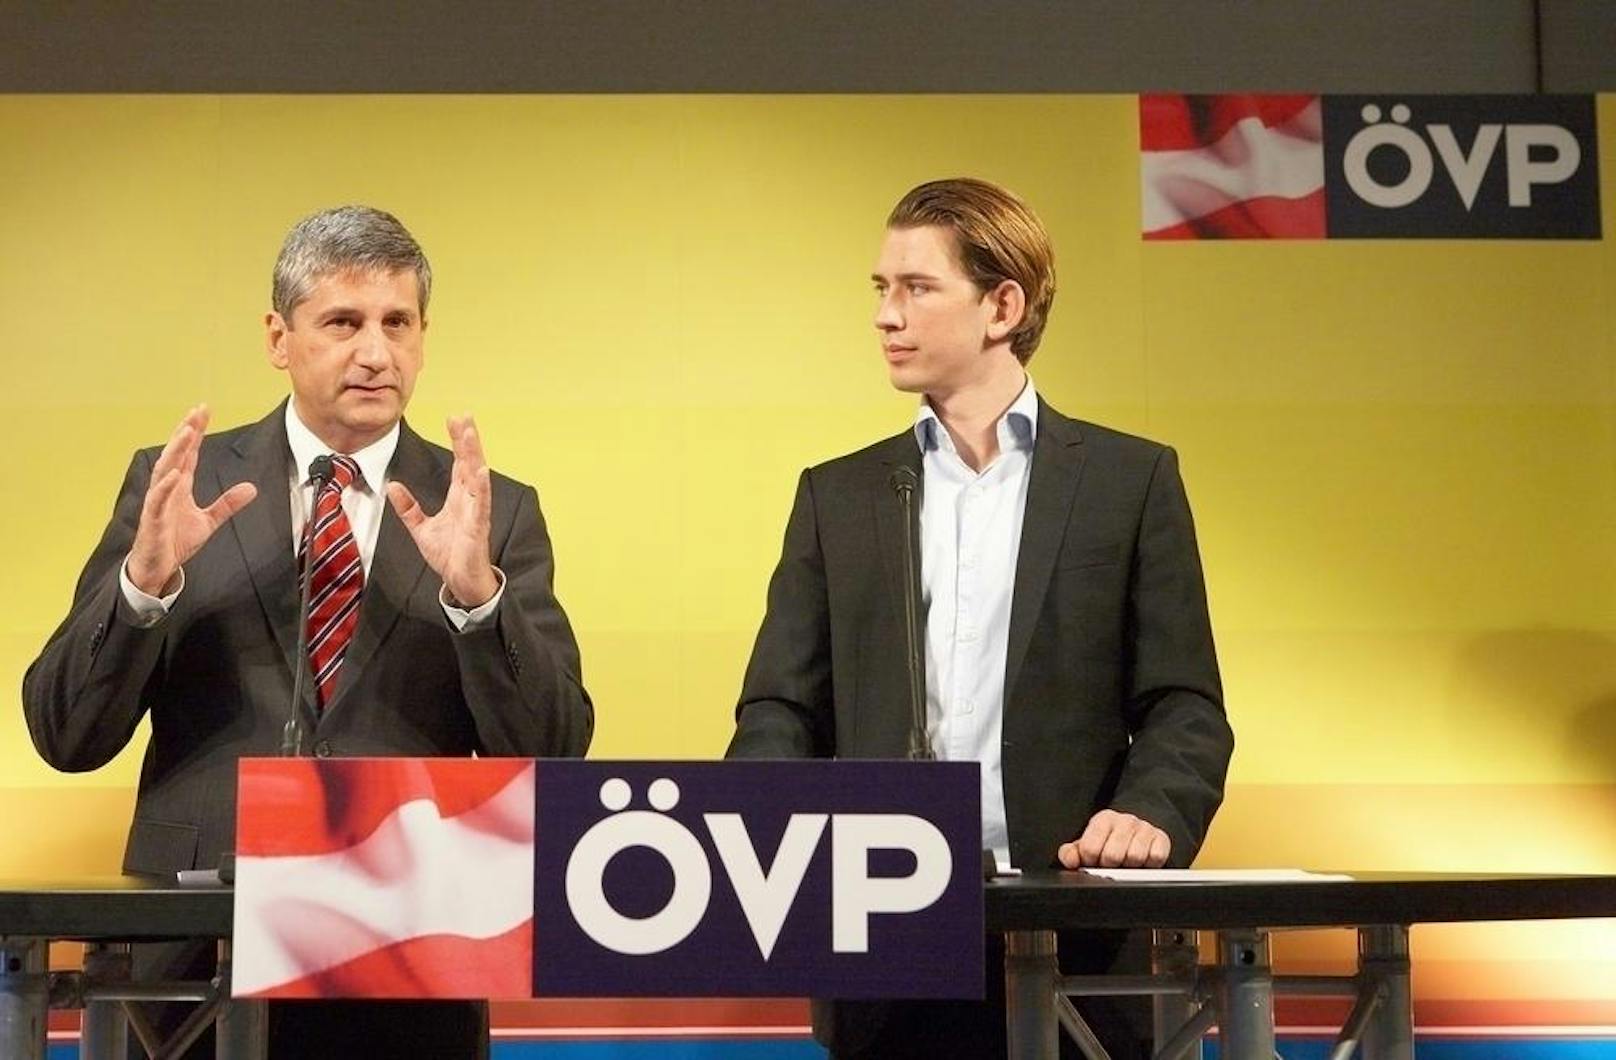 Nach der Nationalratswahl 2013 wurde Kurz als jüngster Außenminister (27 Jahre) der österreichischen Geschichte angelobt. Er folgte dabei Michael Spindelegger nach.